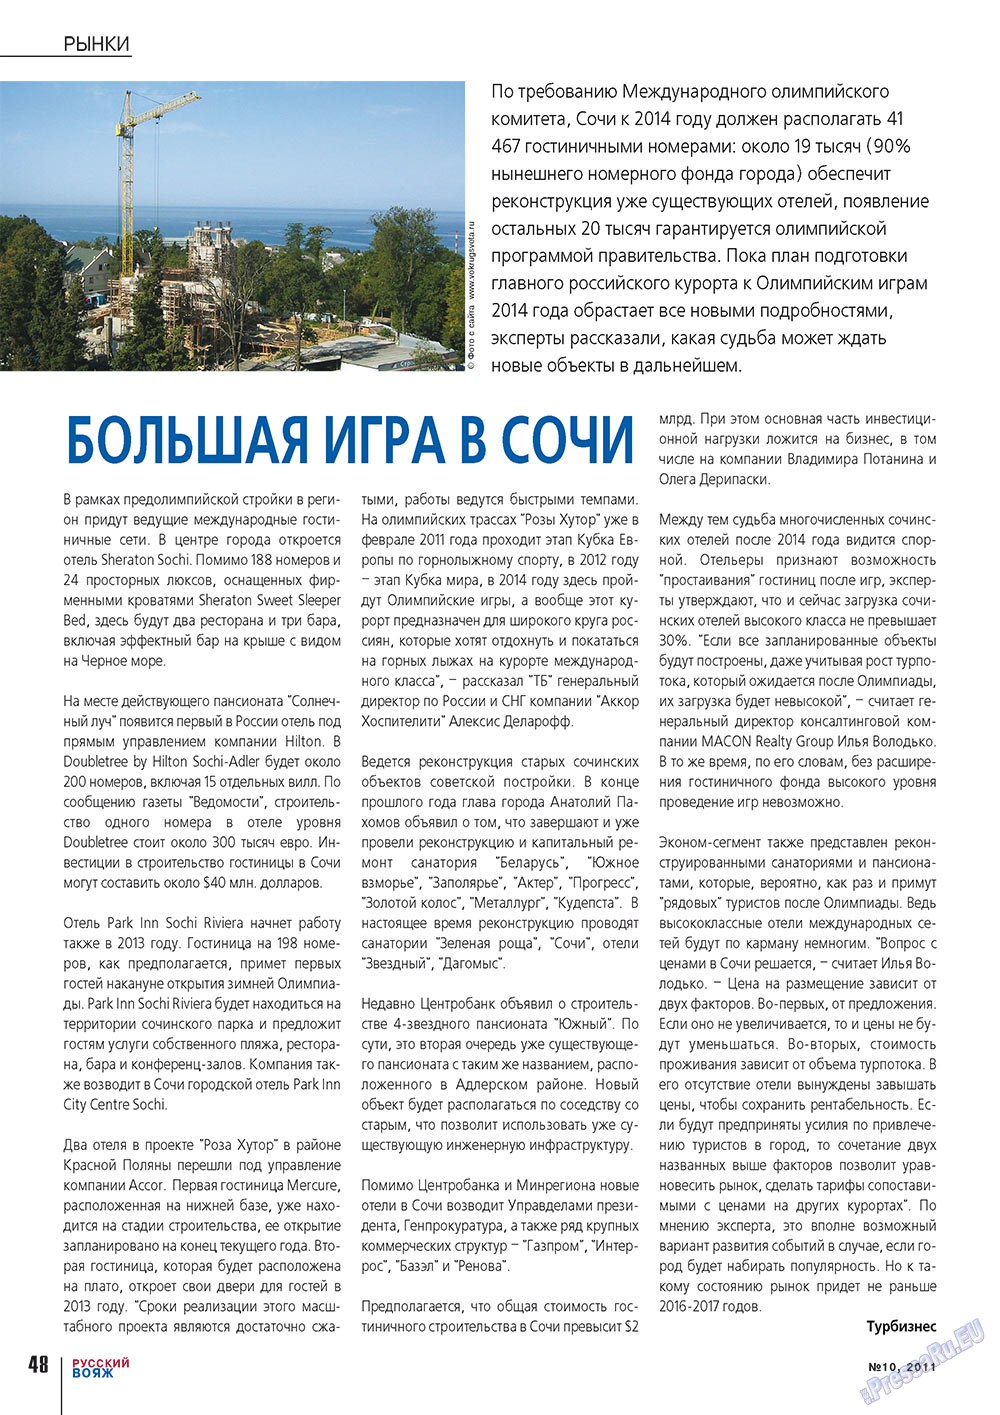 Русский вояж (журнал). 2011 год, номер 10, стр. 48